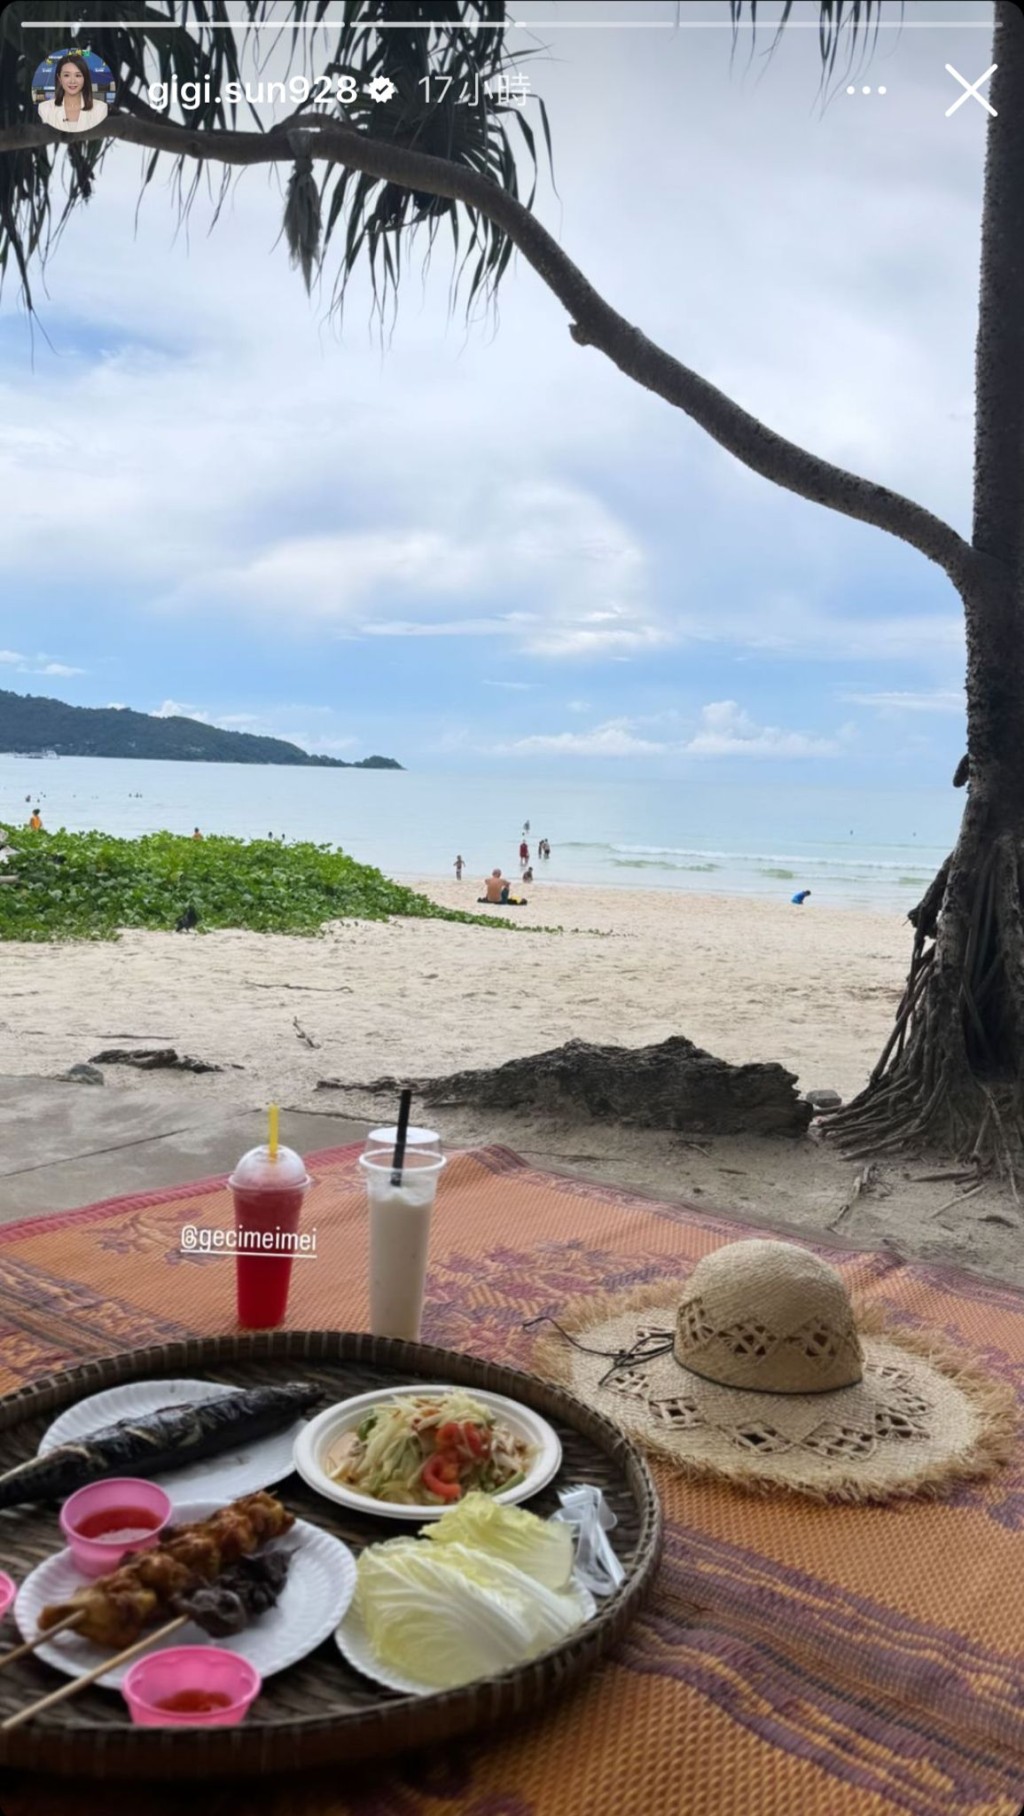 孫雪祺在沙灘一邊日光浴一邊品嚐串燒、青木瓜沙律等當地美食。